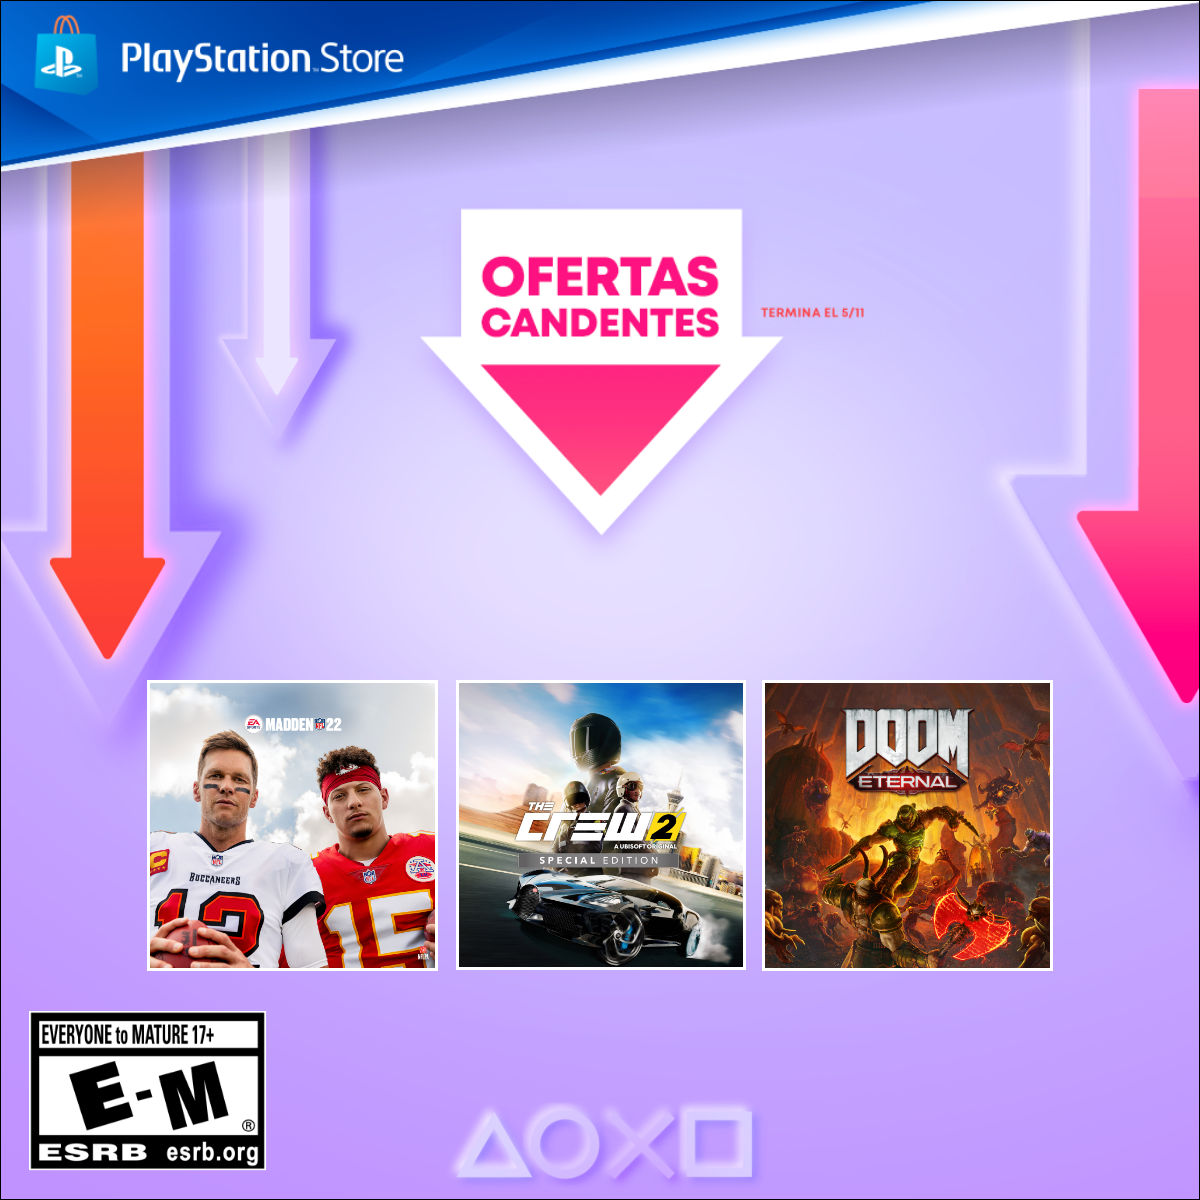 Han llegado nuevas y muy buenas ofertas a la PlayStation Store